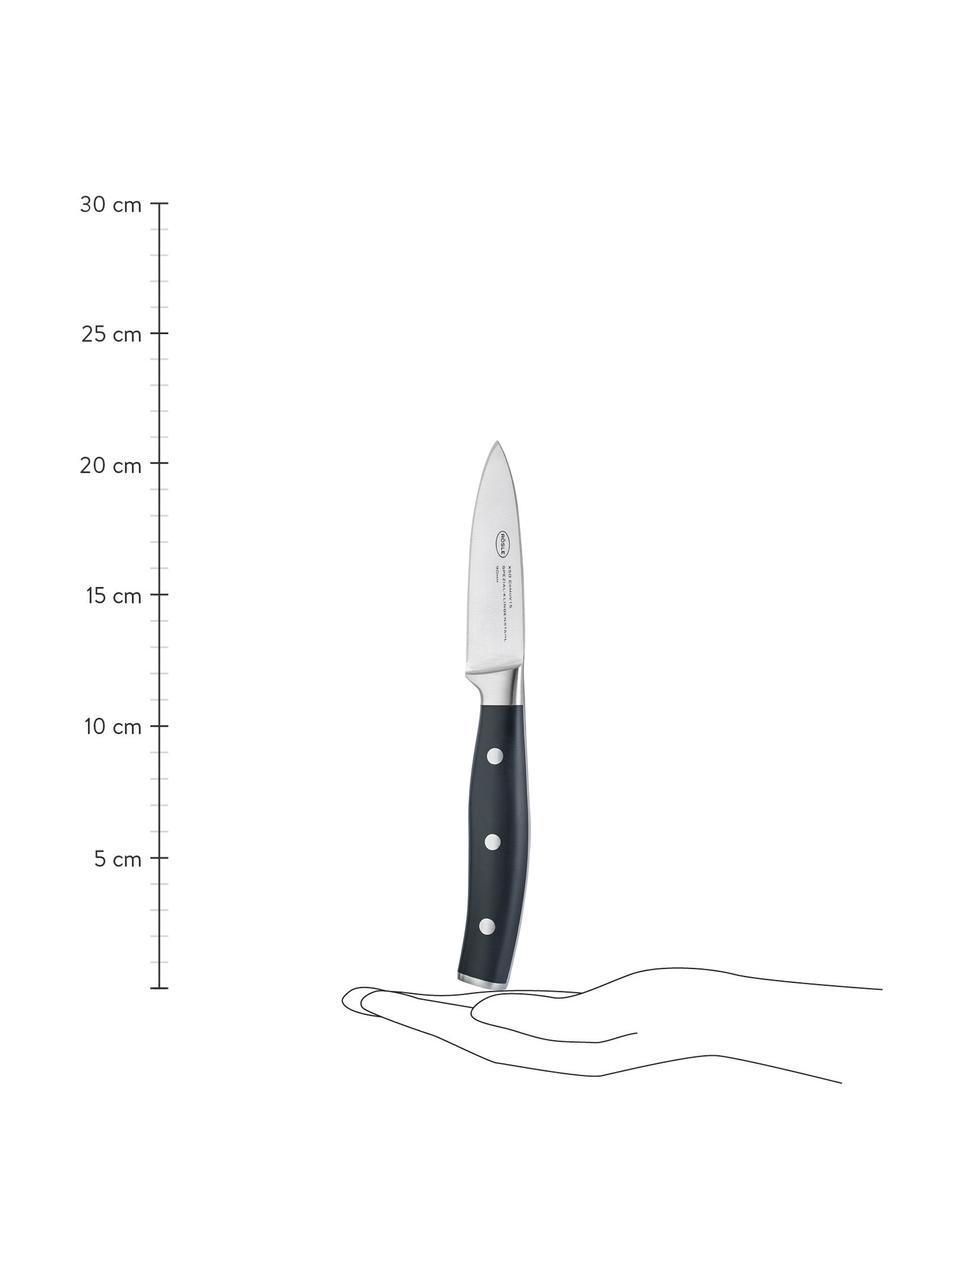 Couteau d'office Tradition, Couleur argentée, noir, long. 21 cm